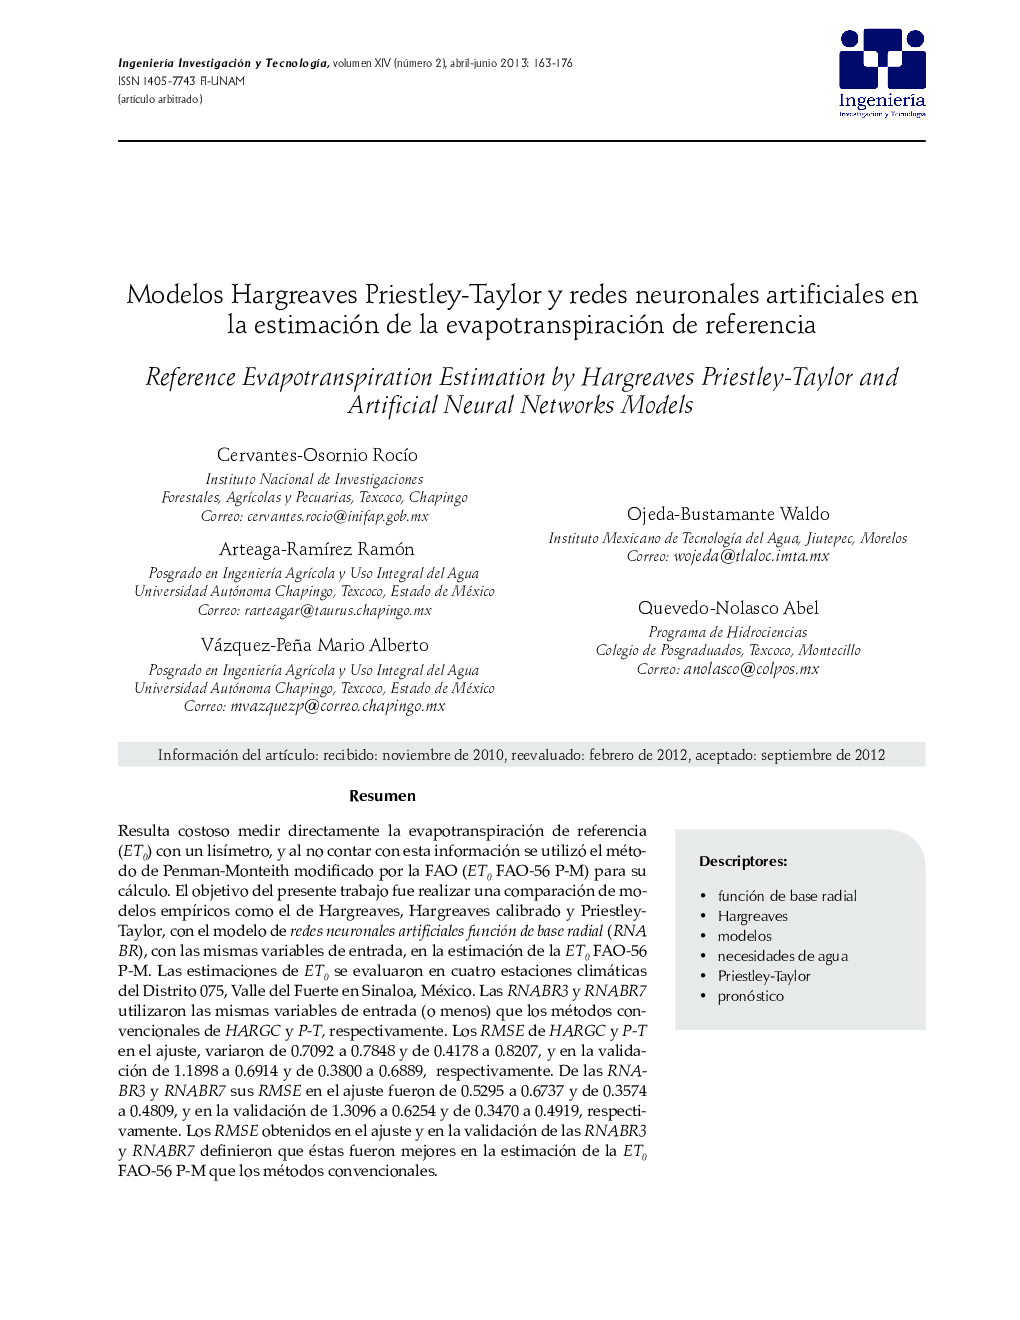 Modelos Hargreaves Priestley-Taylor y redes neuronales artificiales en la estimación de la evapotranspiración de referencia *